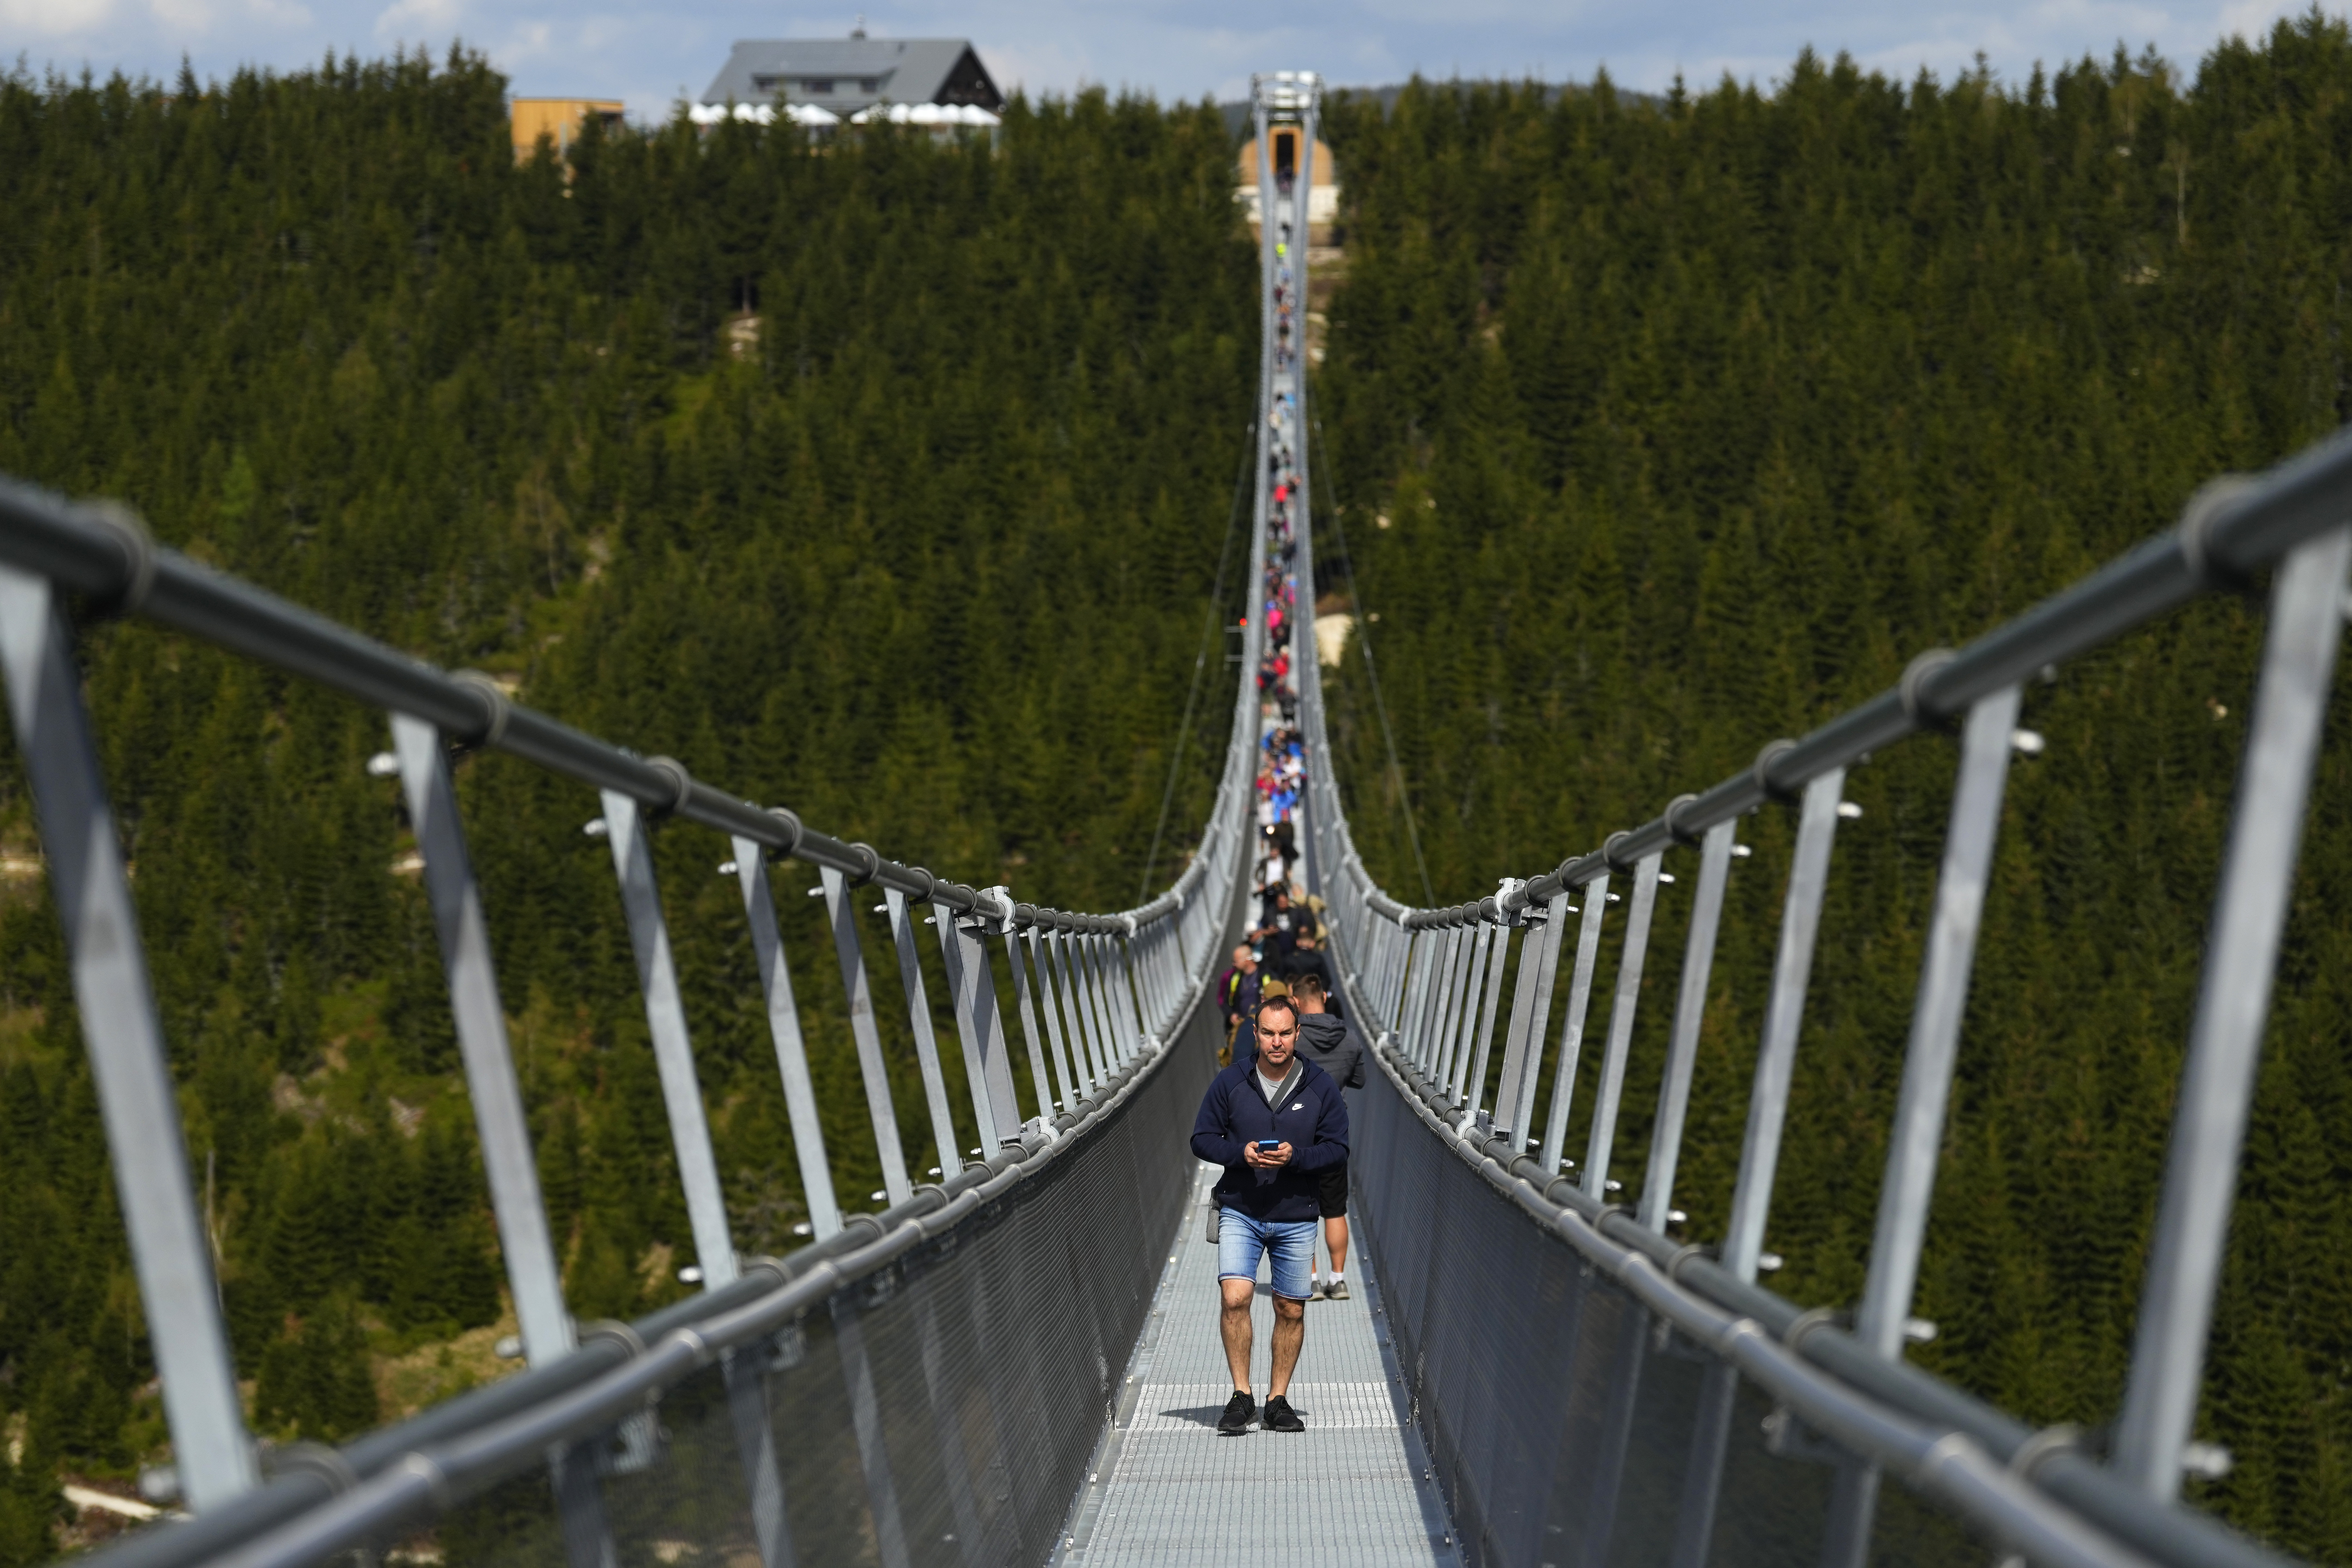 <p>Най-дългият висящ пешeходен мост в света бе открит в Чехия. Съоръжението е с дължина от 721 метра и виси на 95 метра над земята в най-високата си точка. То свързва два планински хребета и е на повече от 1100 метра надморска височина. Наречено е &quot;Небесен мост 721&quot; и се намира в североизточната част на Чехия, в планината Кралички Снежник, близо до границата с Полша.</p>